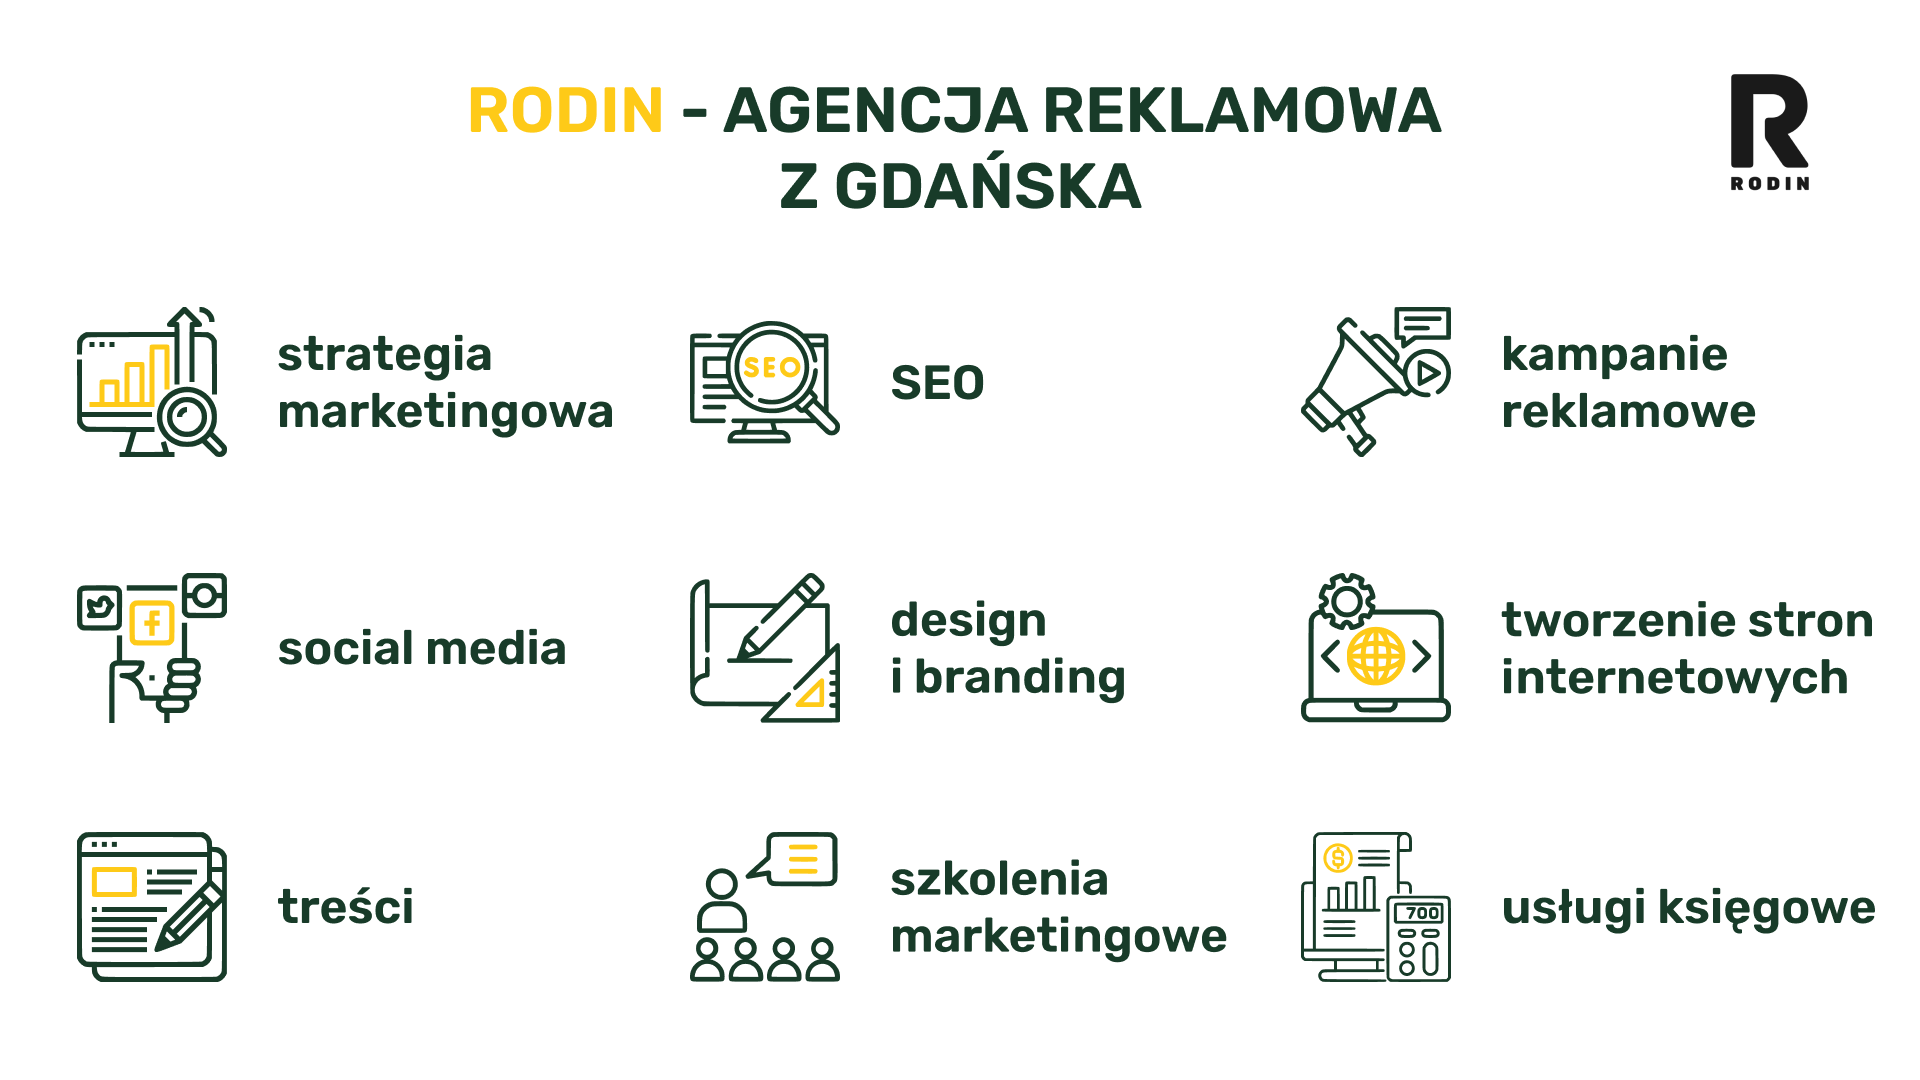 RodIN - agencja reklamowa z Gdańska